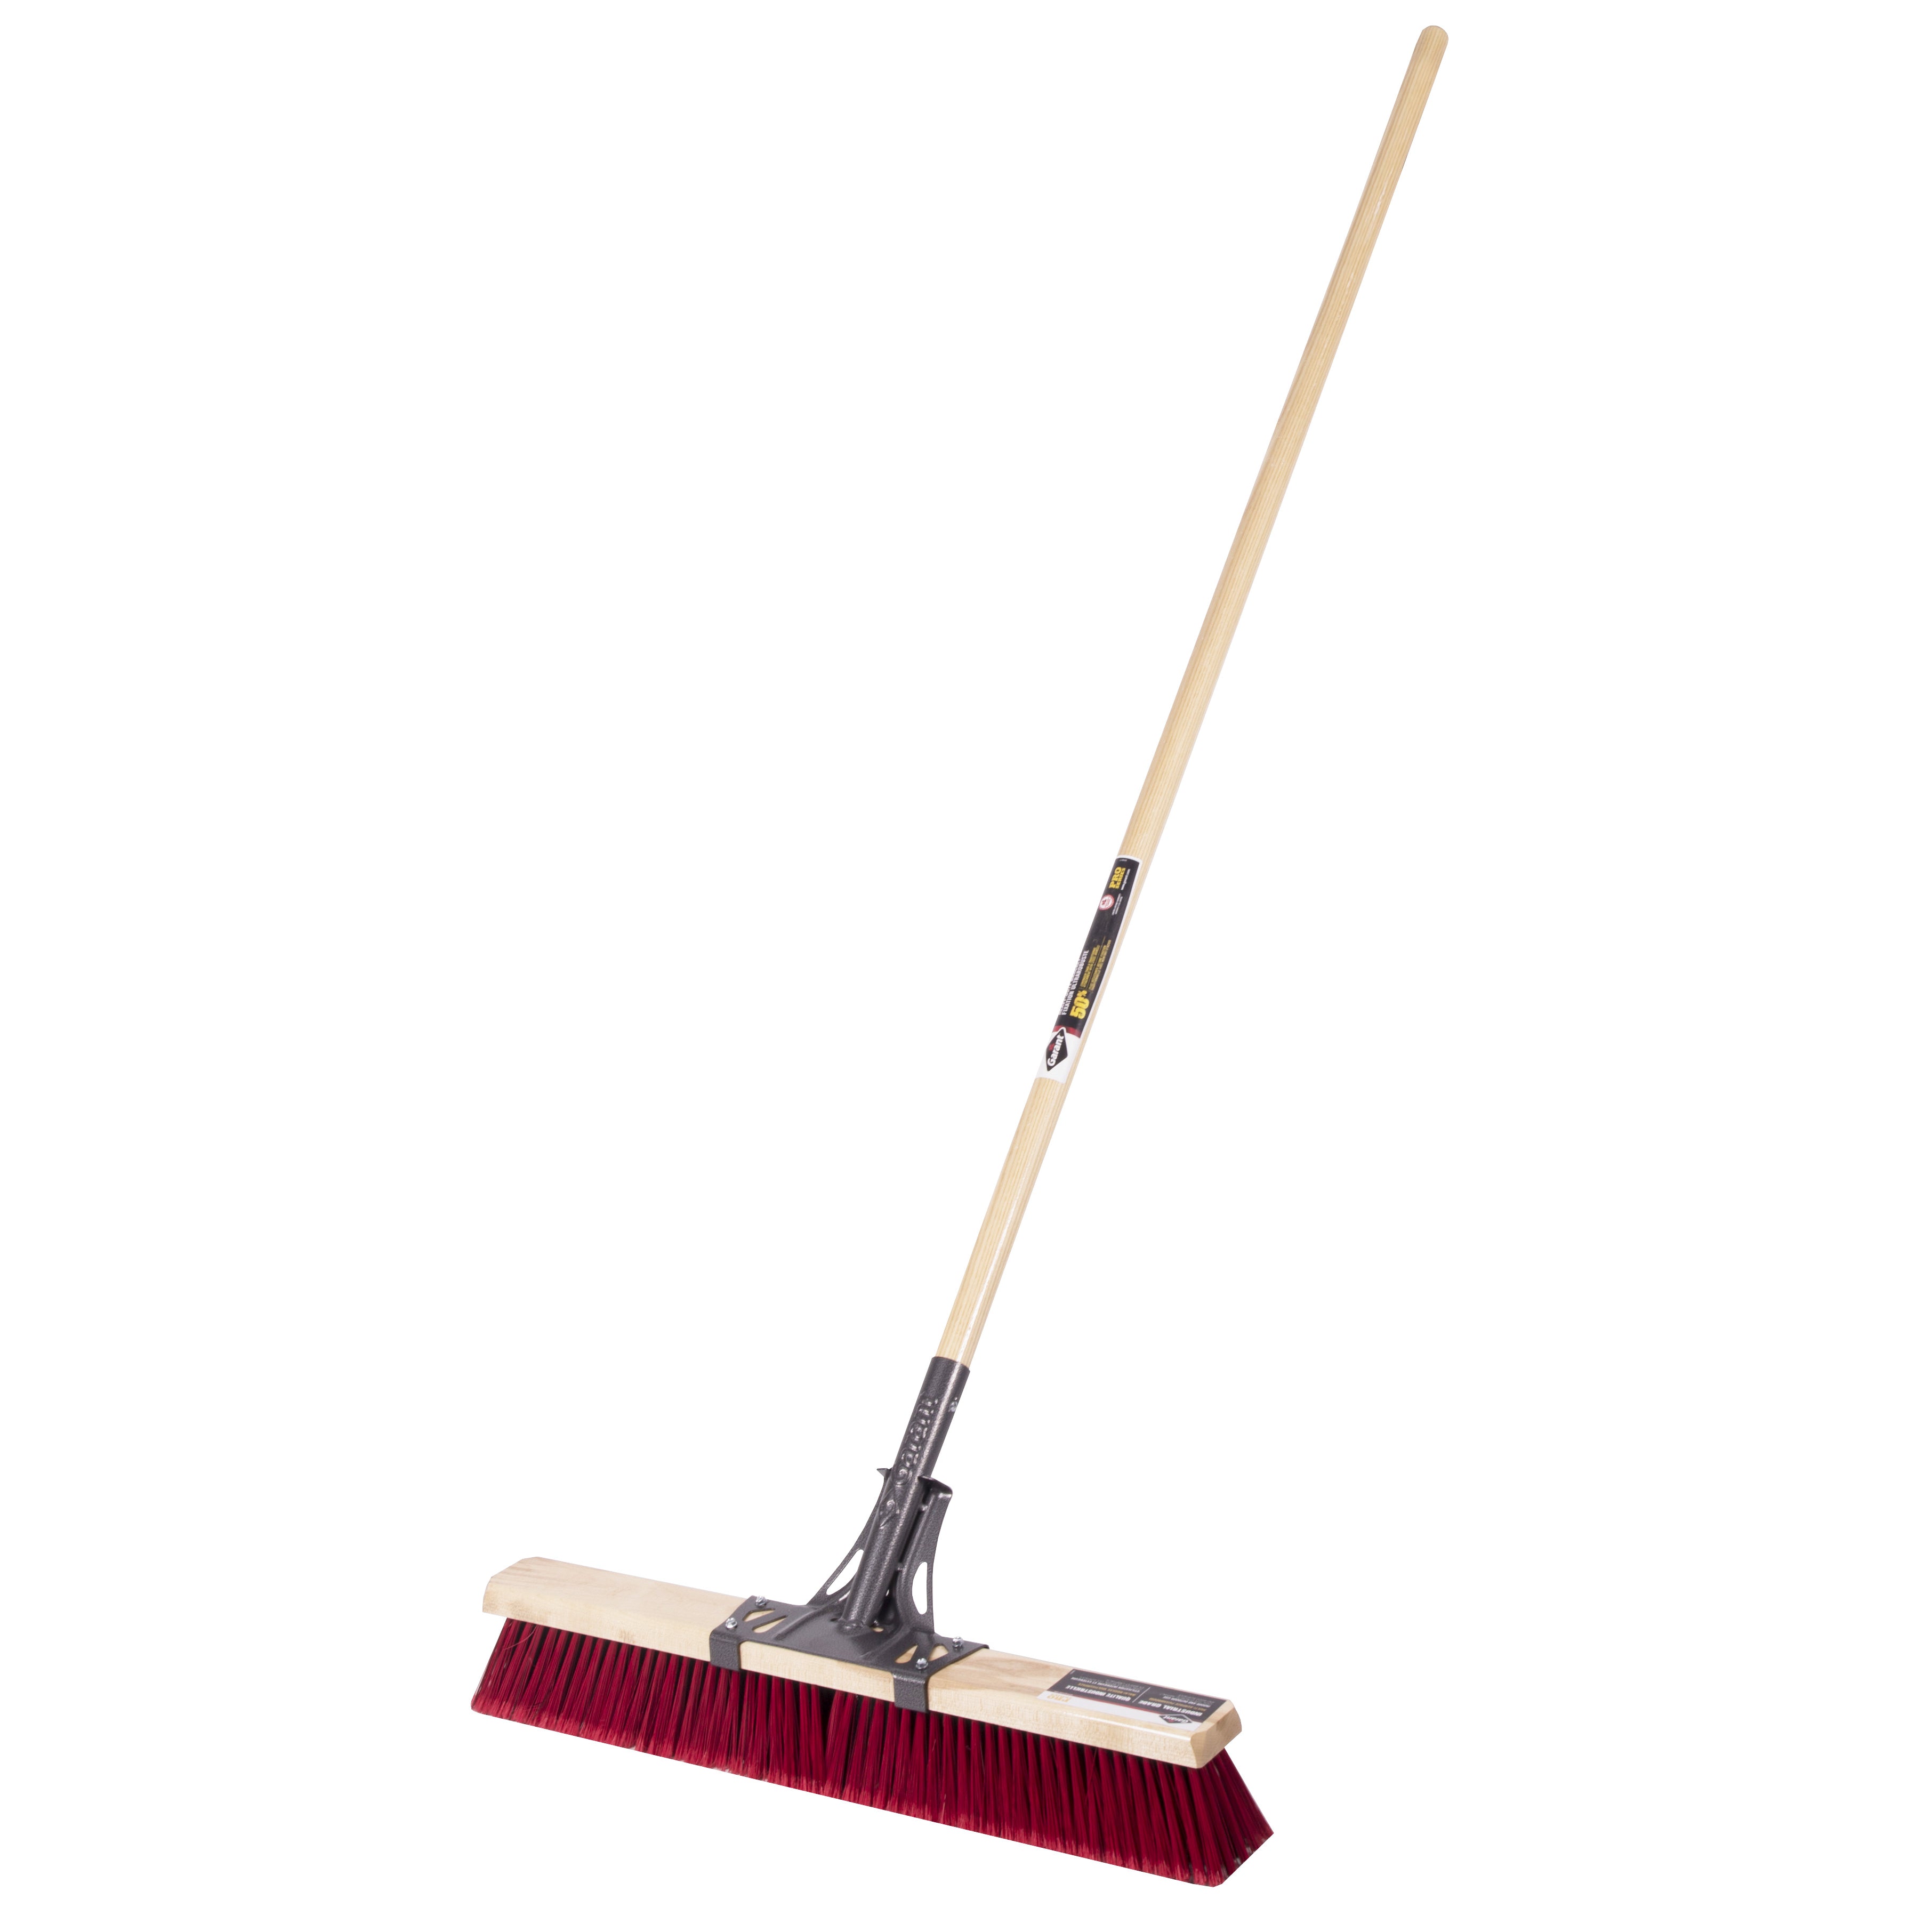 Push broom, 24", multi, wood hdl